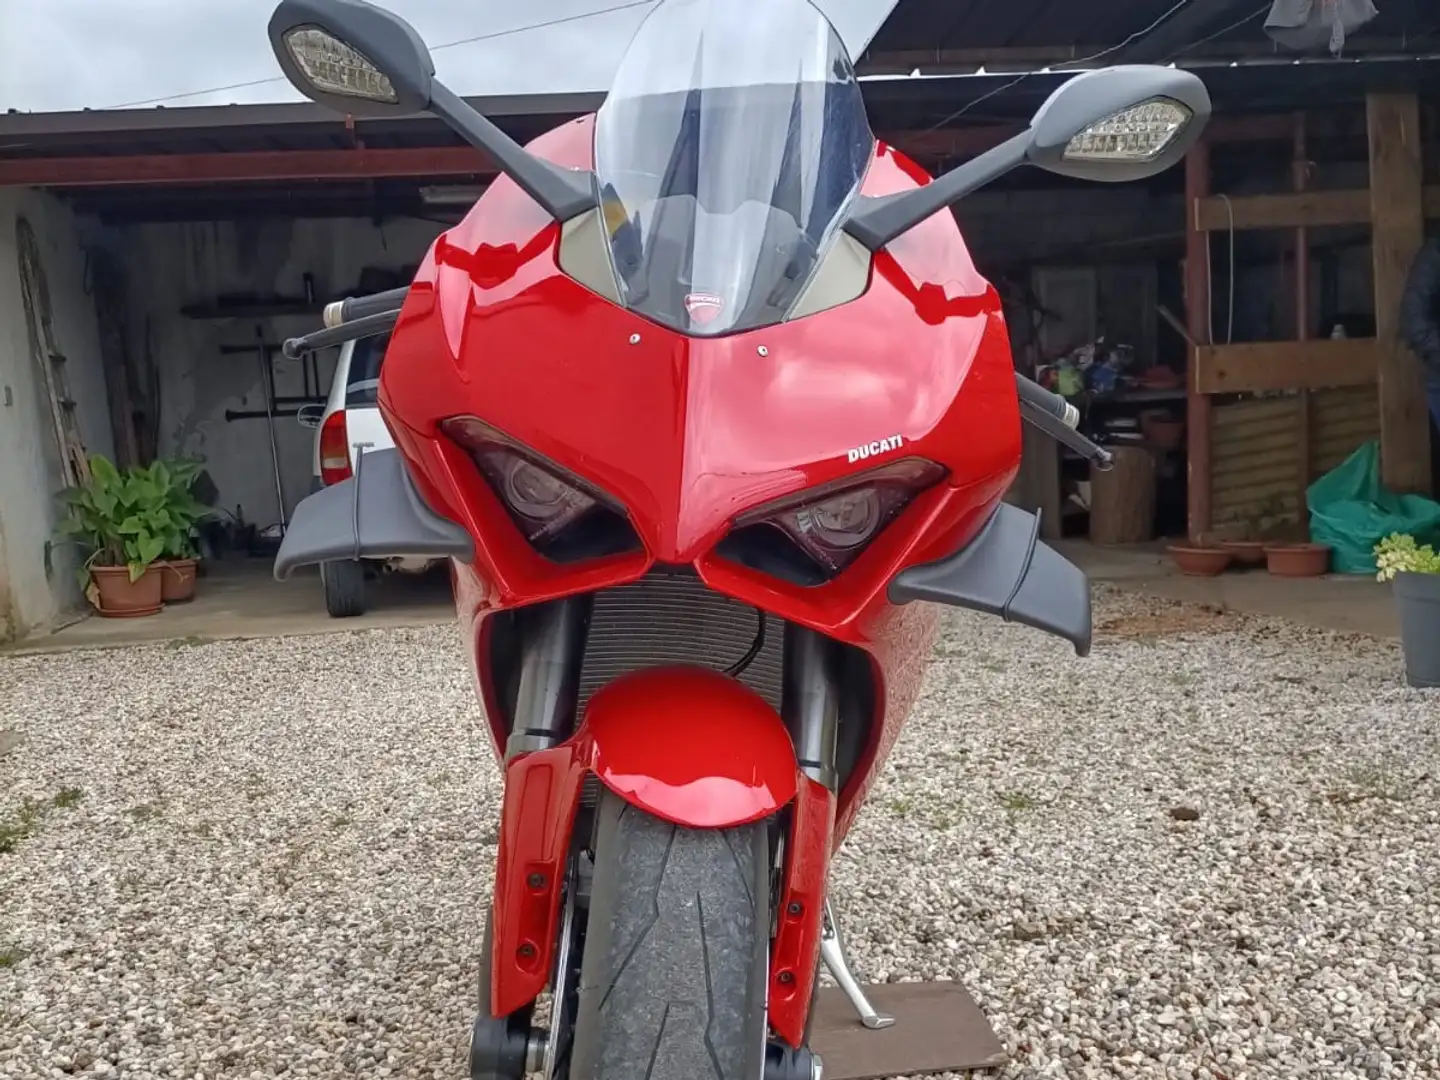 Ducati Panigale V4 Czerwony - 2